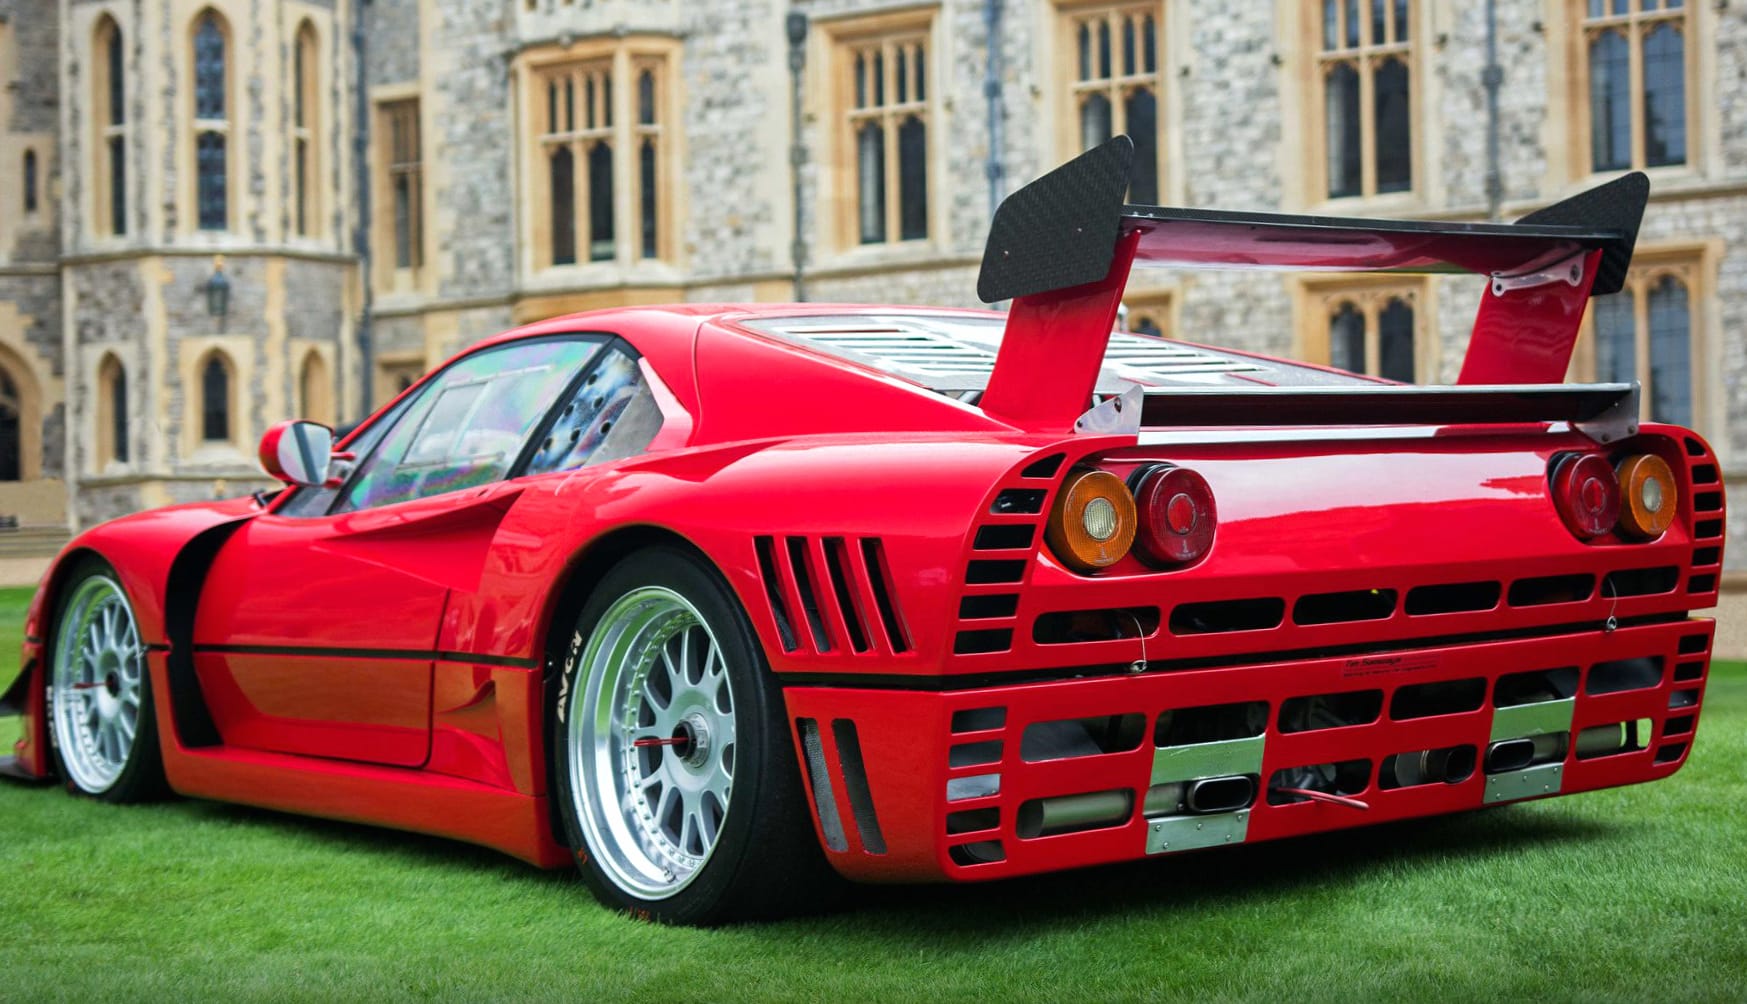 Ferrari GTO Evoluzione at 1600 x 1200 size wallpapers HD quality